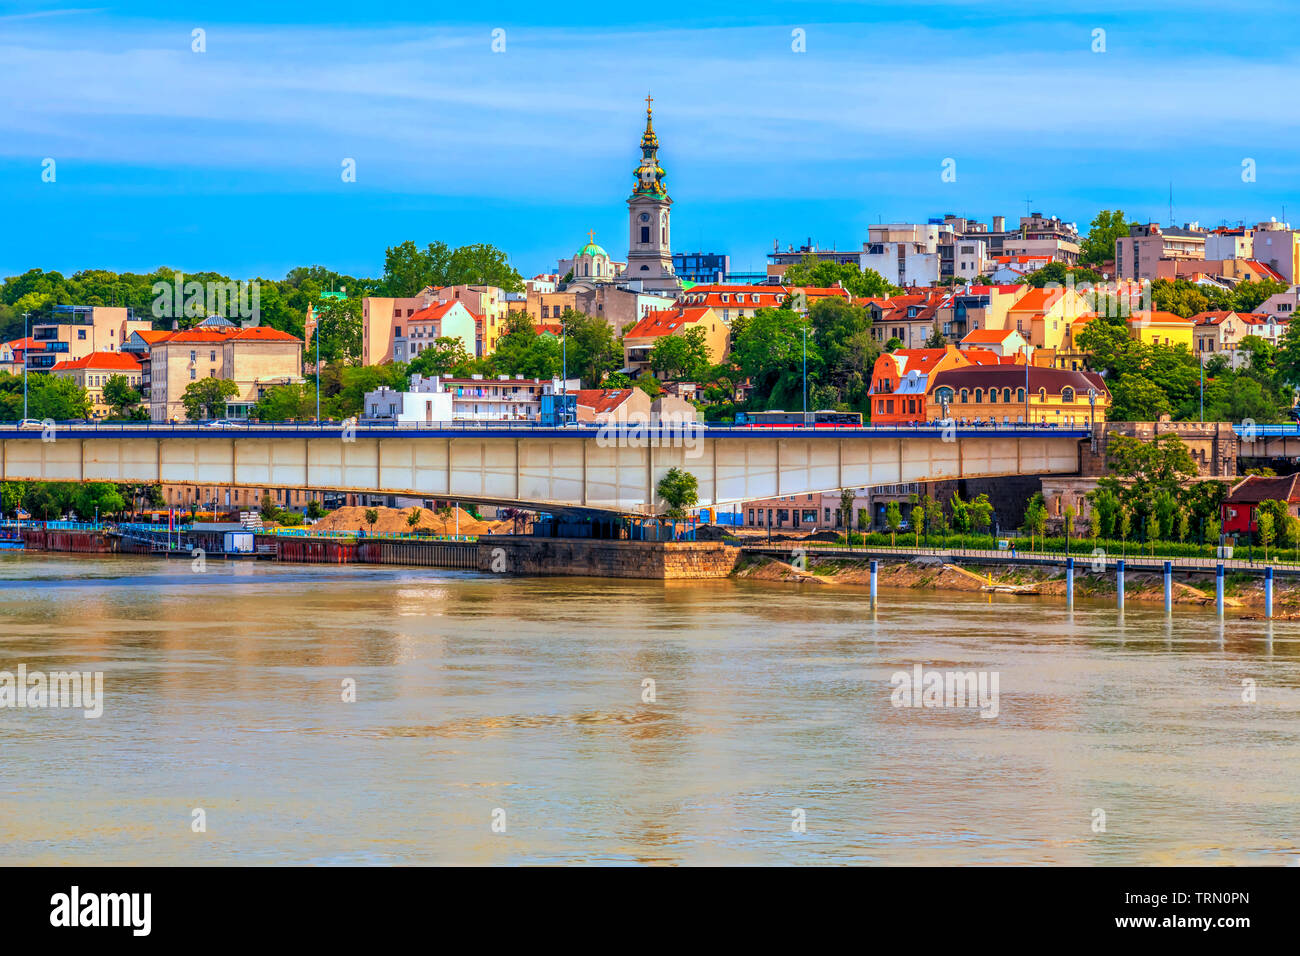 Bridge dans le centre historique de Belgrade sur les rives de la rivière Sava Banque D'Images